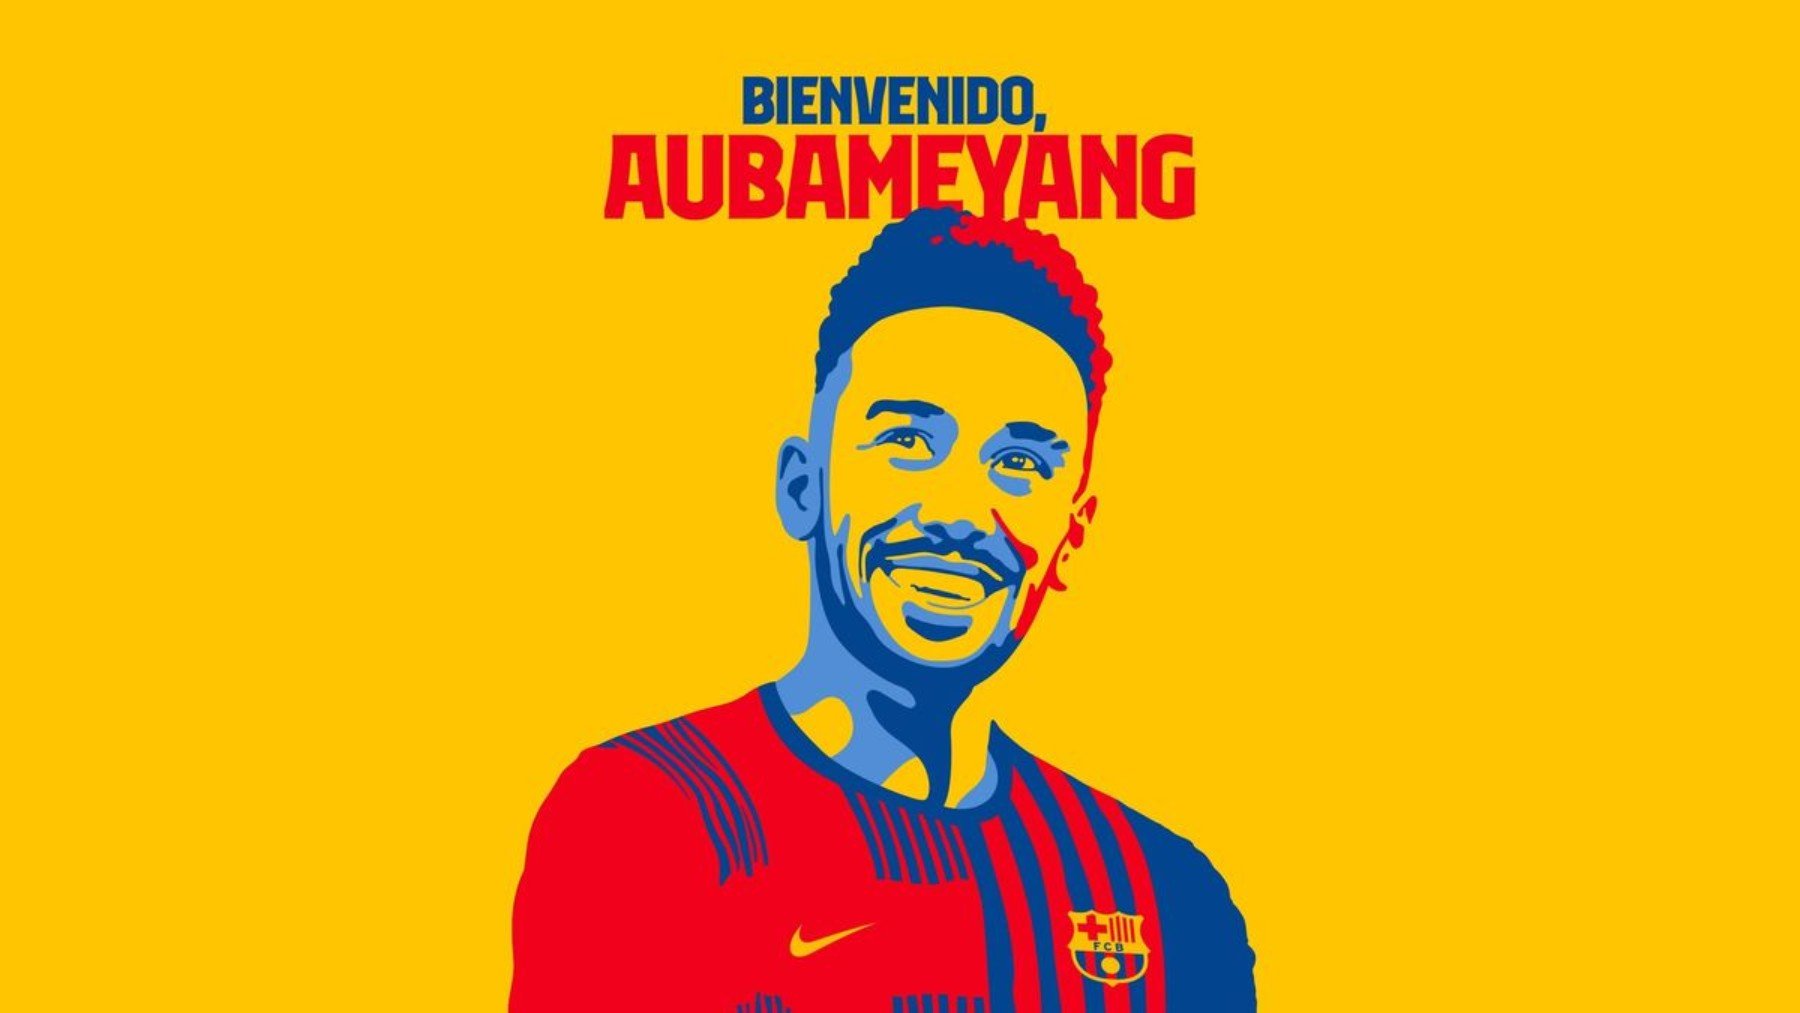 Aubameyang, nuevo jugador del Barcelona. (FC Barelona)